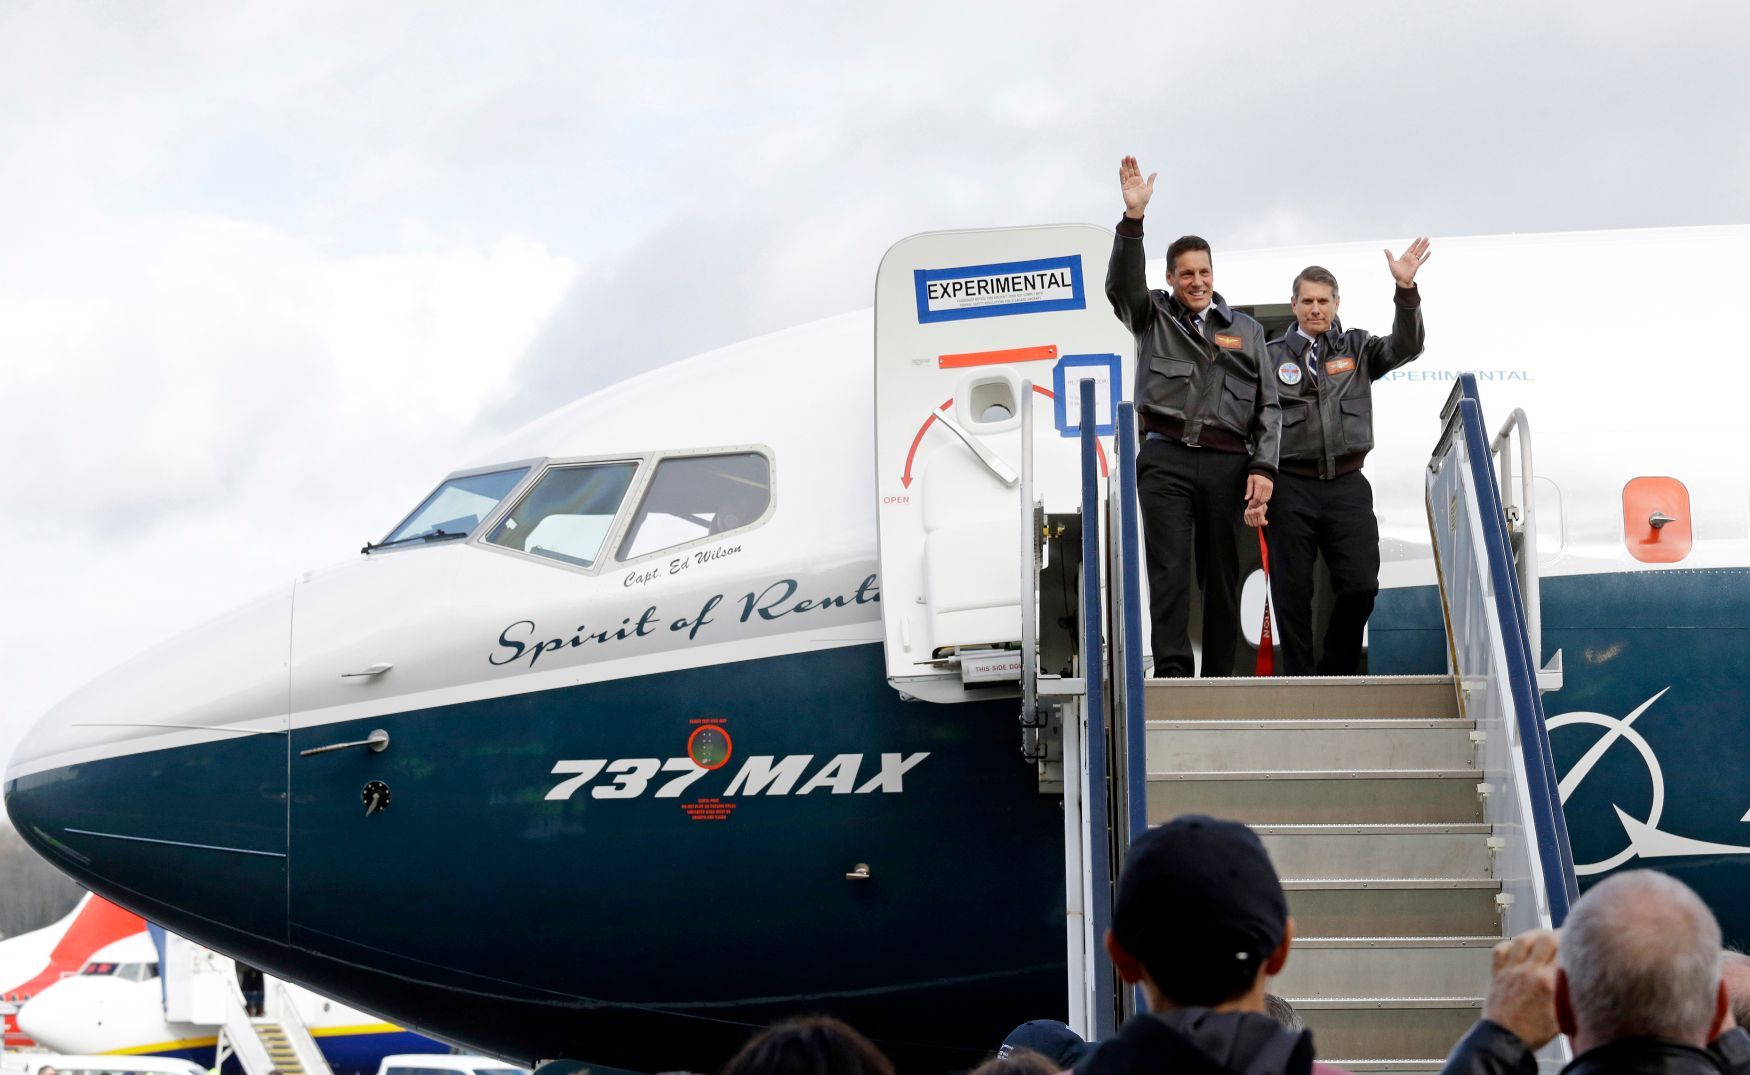 Boeing 737 MAX-historicky první let